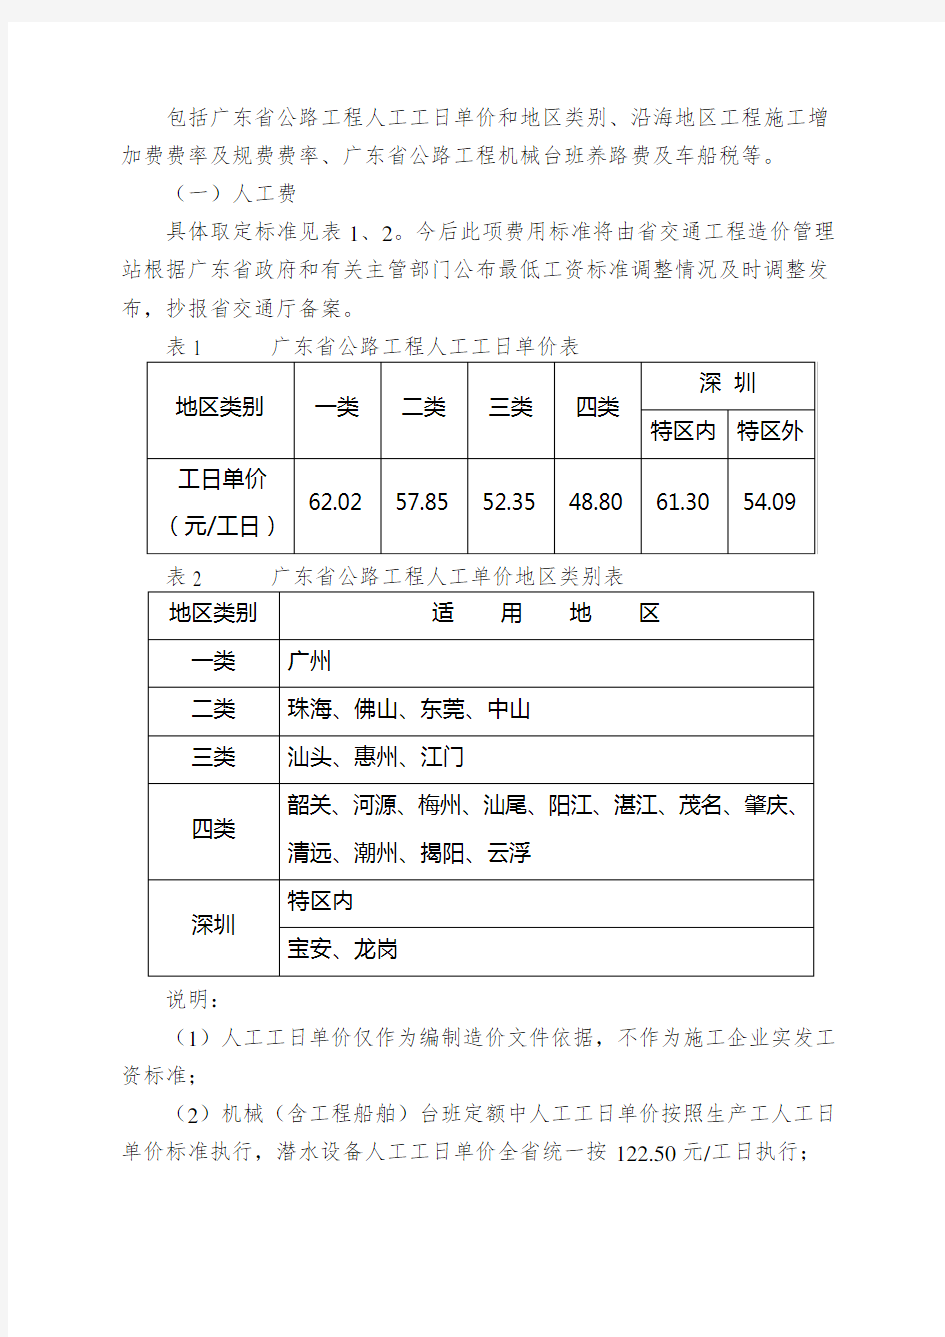 广东省执行交通部《公路基本建设工程概算预算编制办法》的补充规定